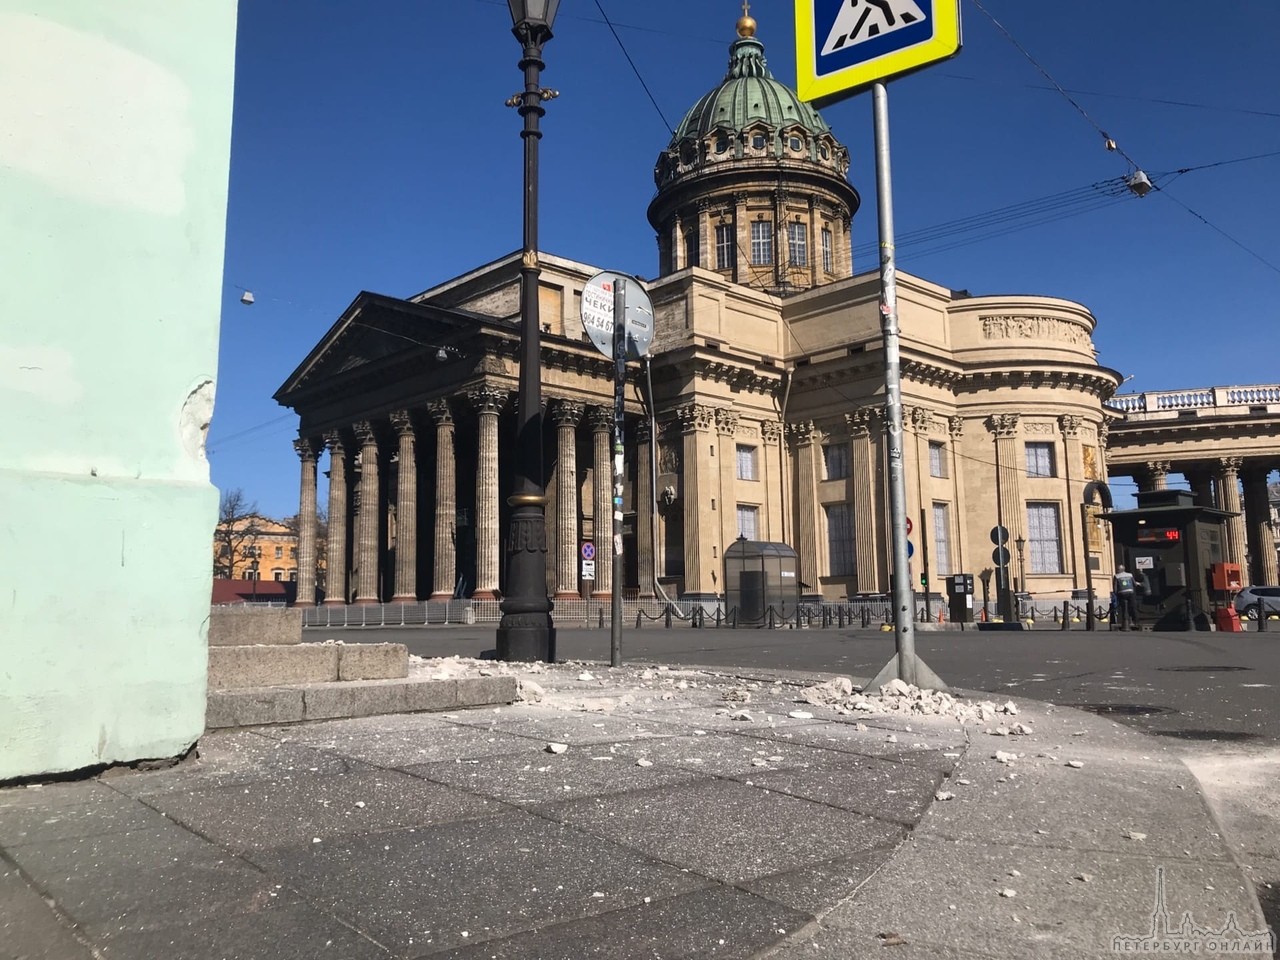 Произошло обрушение элементов фасада дома на Казанской площади.